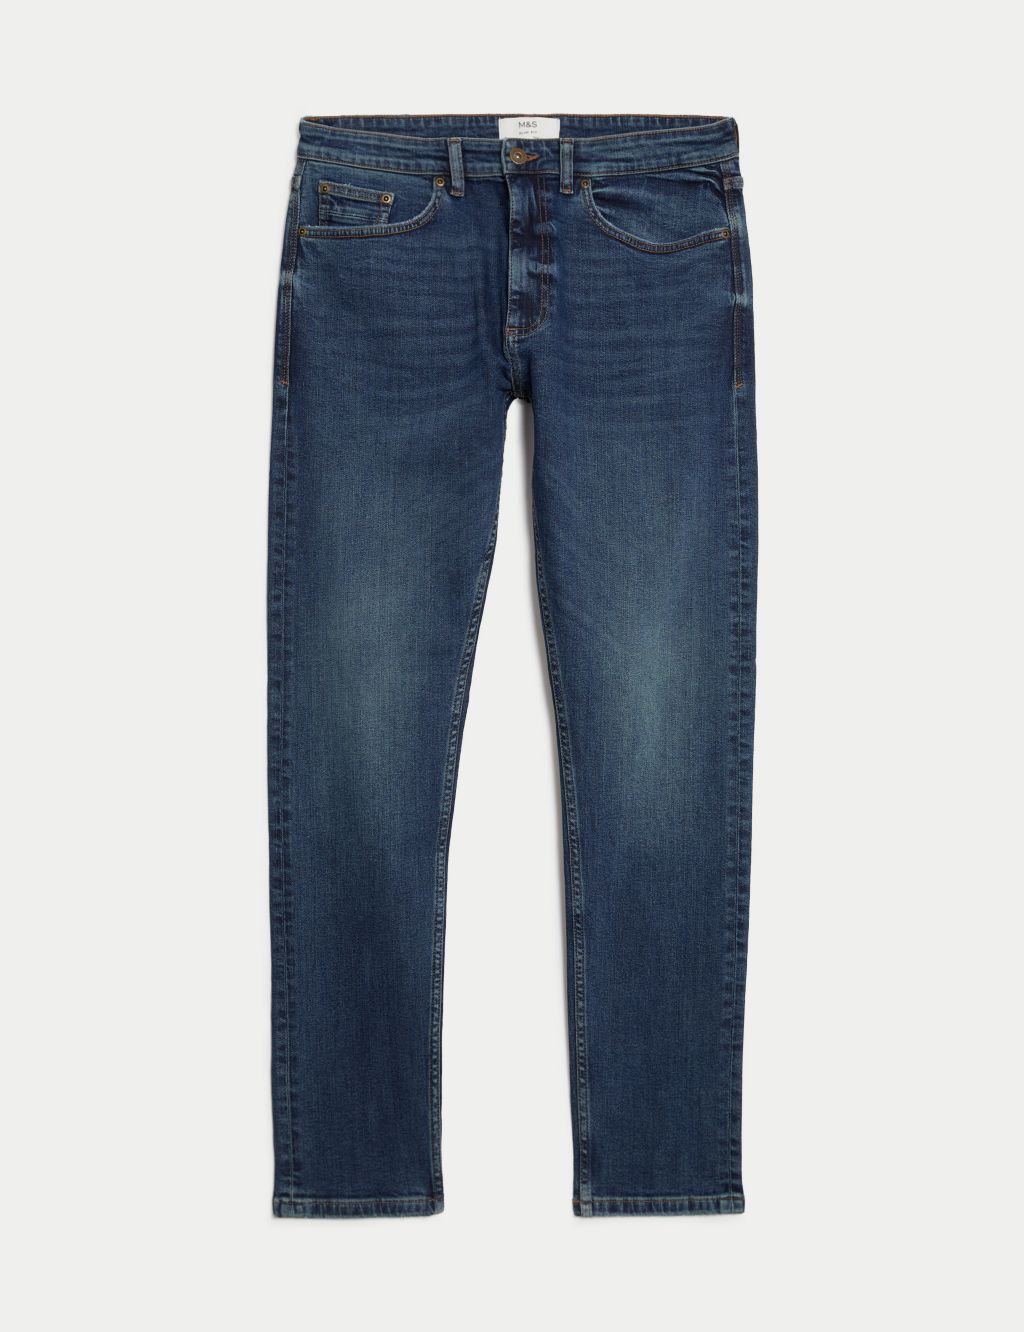 Slim Fit Vintage Wash Stretch Jeans image 2